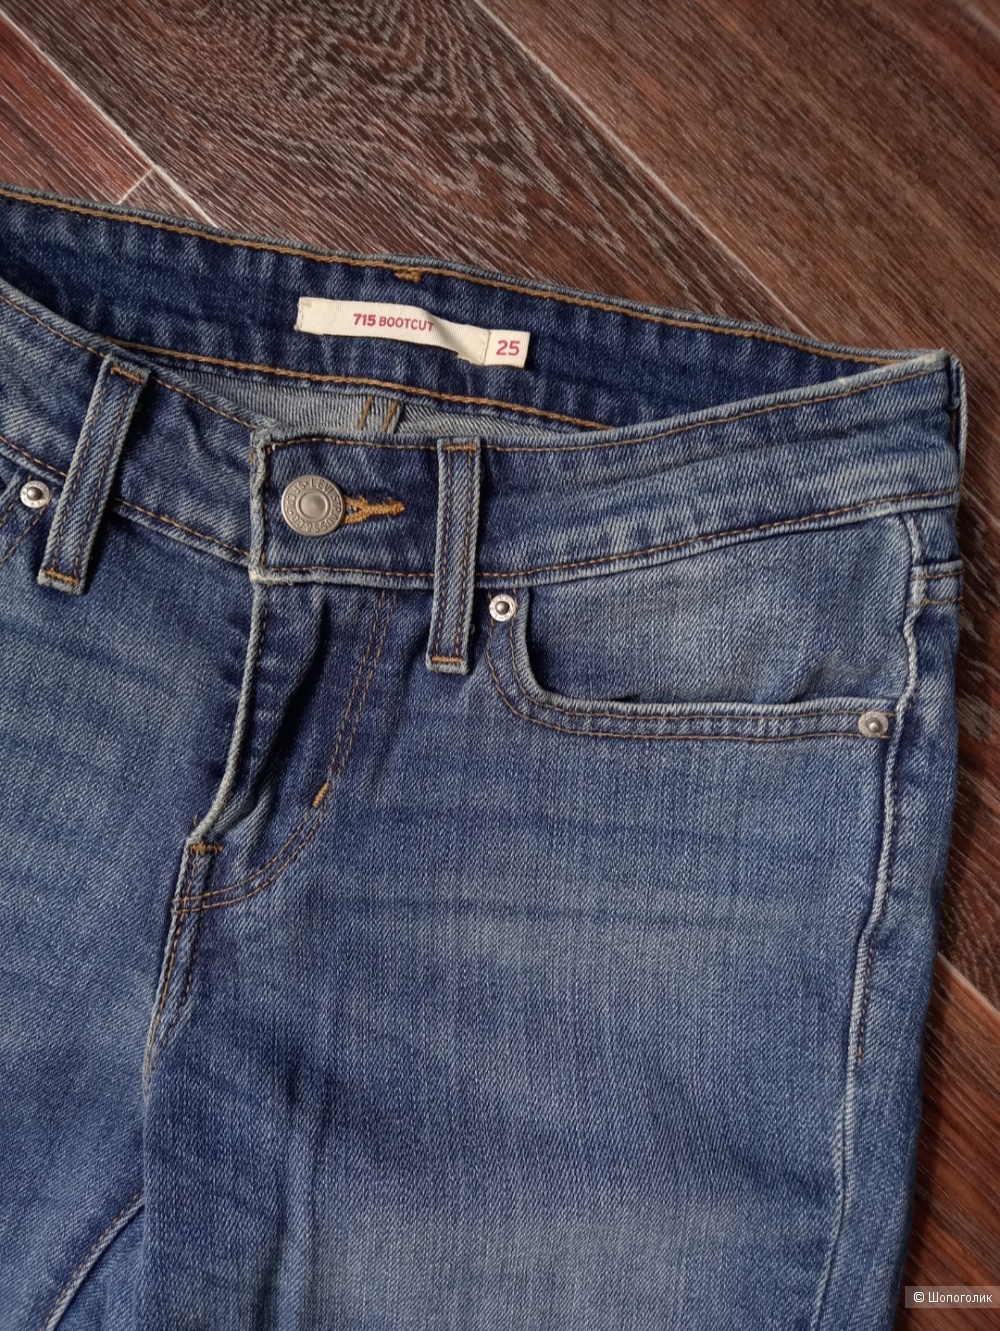 Новые джинсы Levis 715 Bootcut 25